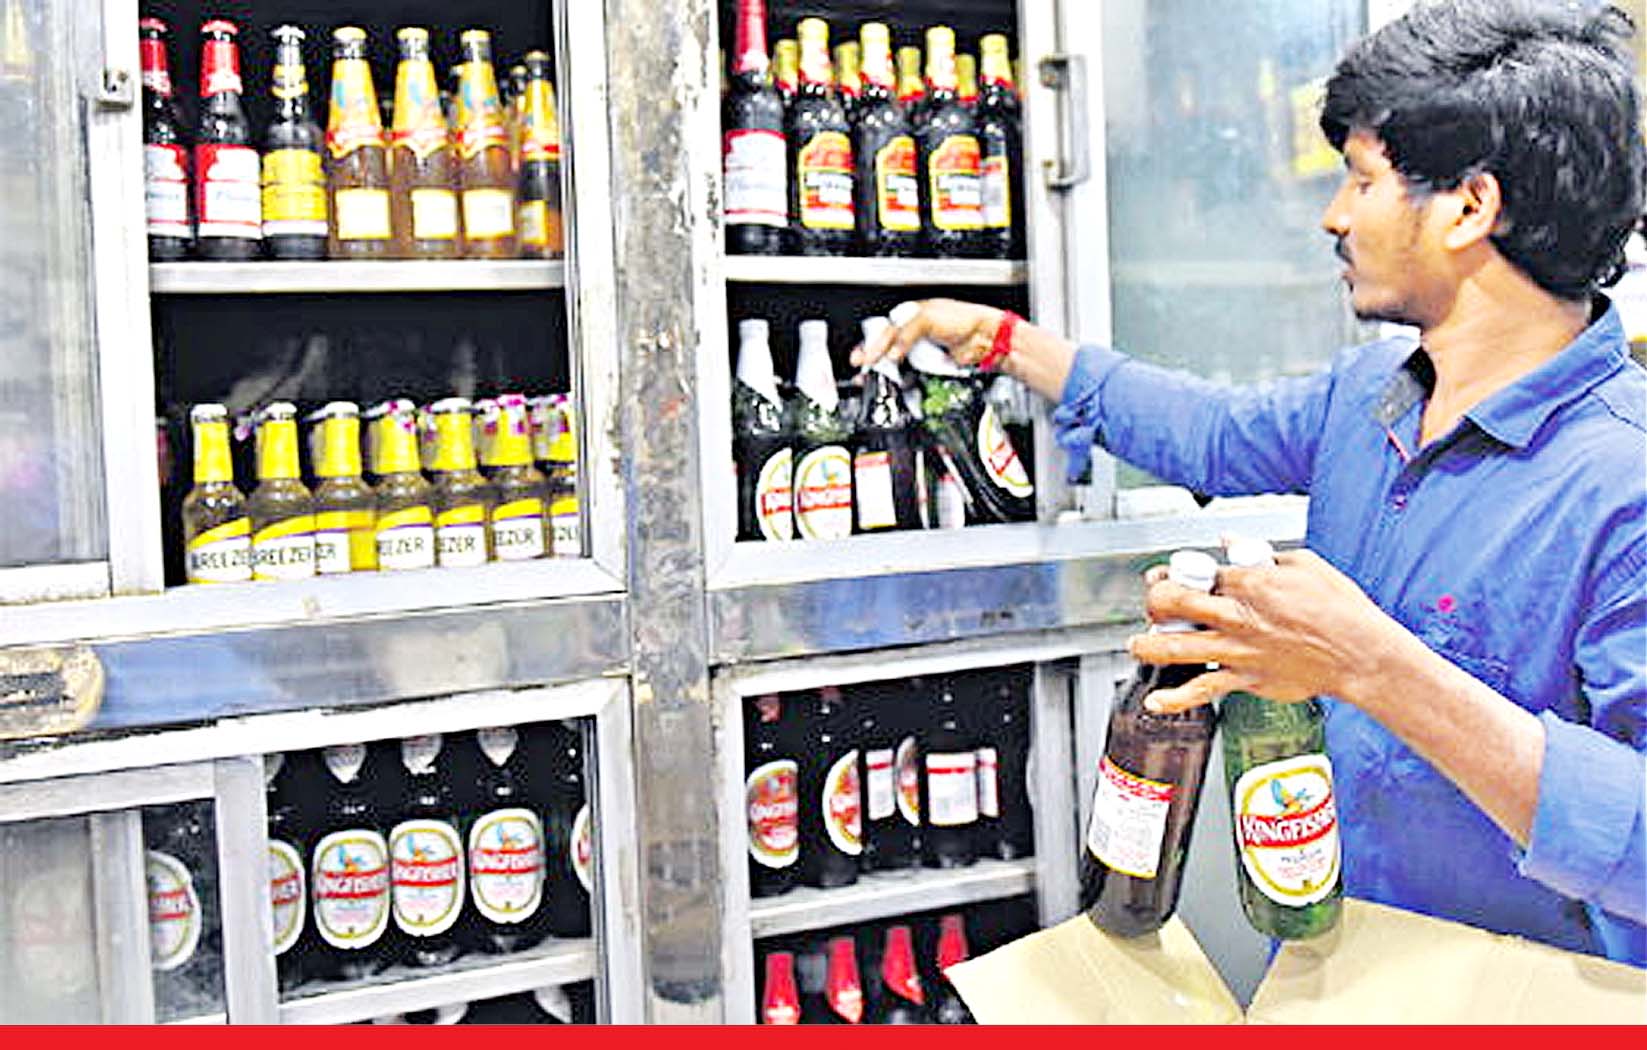 दिल्ली एयरपोर्ट पर 10 मार्च तक खुलेंगी शराब की दुकानें, 24 घंटे होगी बिक्री